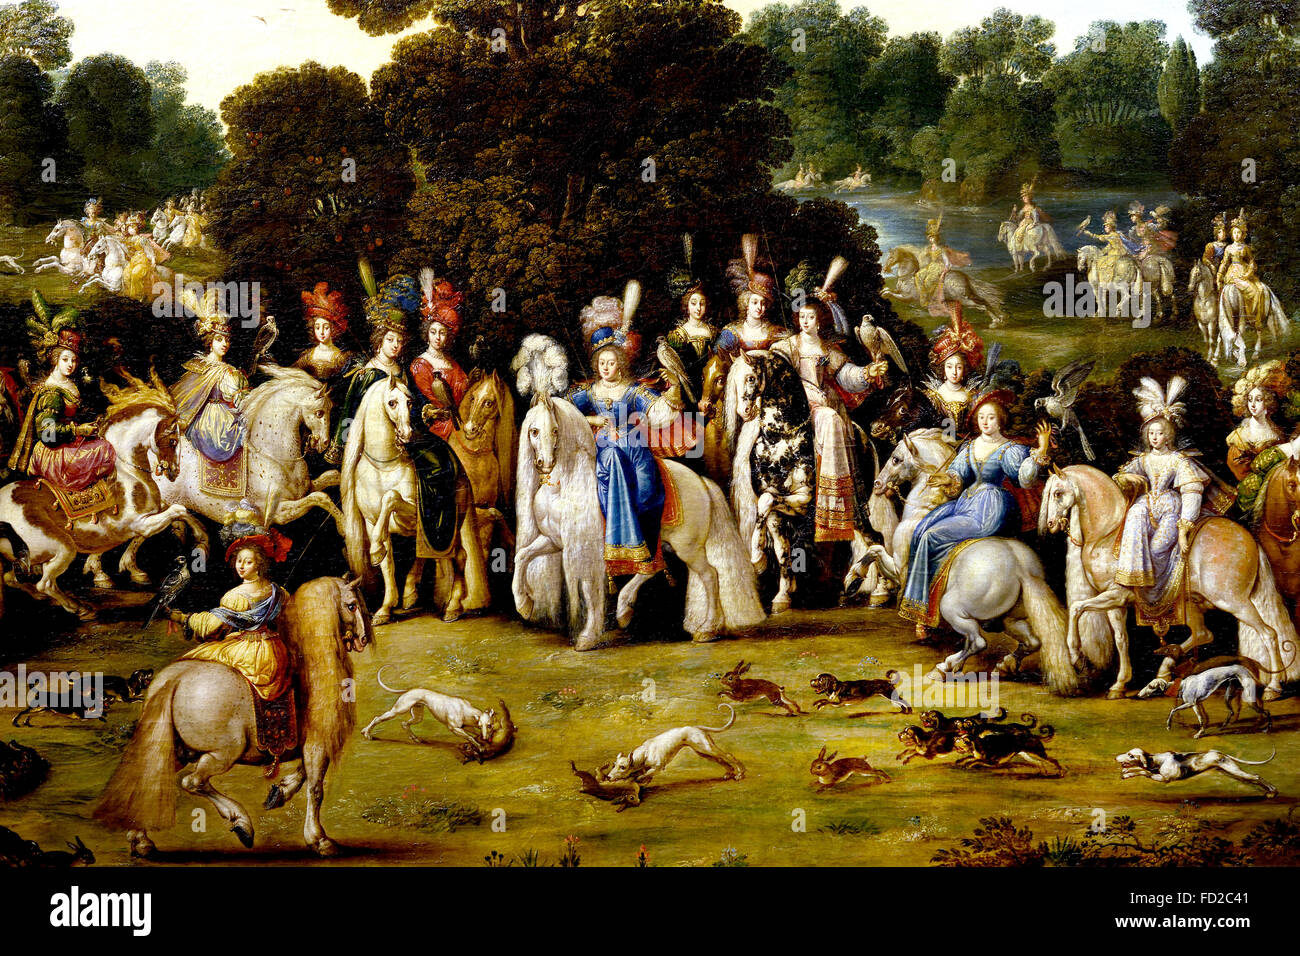 IIntended pour décorer le bureau de la Reine Anne d'Autriche, Richelieu château Deruet 1588-1660 France Français française ( l'air (ou 'Autumn'). C'est le premier tableau de la série, acquis par Richelieu, les trois autres sont arrivés plus tard. Il représente la Duchesse de Lorraine accompagnée de mesdames cour lors d'un faucon de chasse. C'est le seul qui n'est pas consacrée à la gloire de la famille royale. ) Banque D'Images